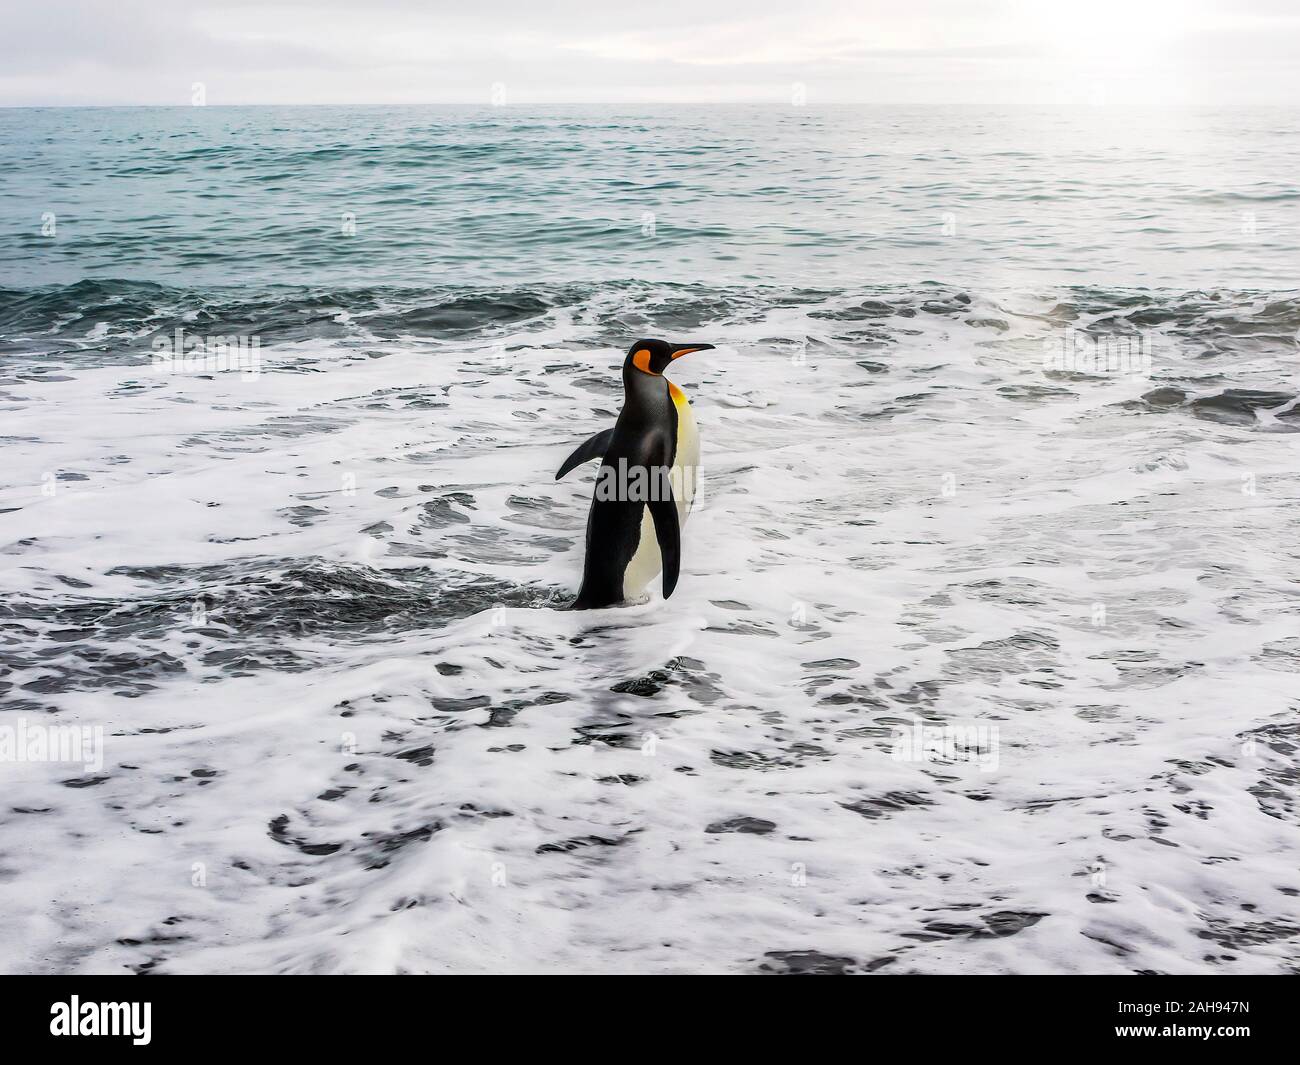 Un roi solitaire penguin (Aptenodytes patagonicus) marcher rapidement dans la mer mousseuse, prêt à nager. L'île de Géorgie du Sud dans l'océan Atlantique Sud. Banque D'Images